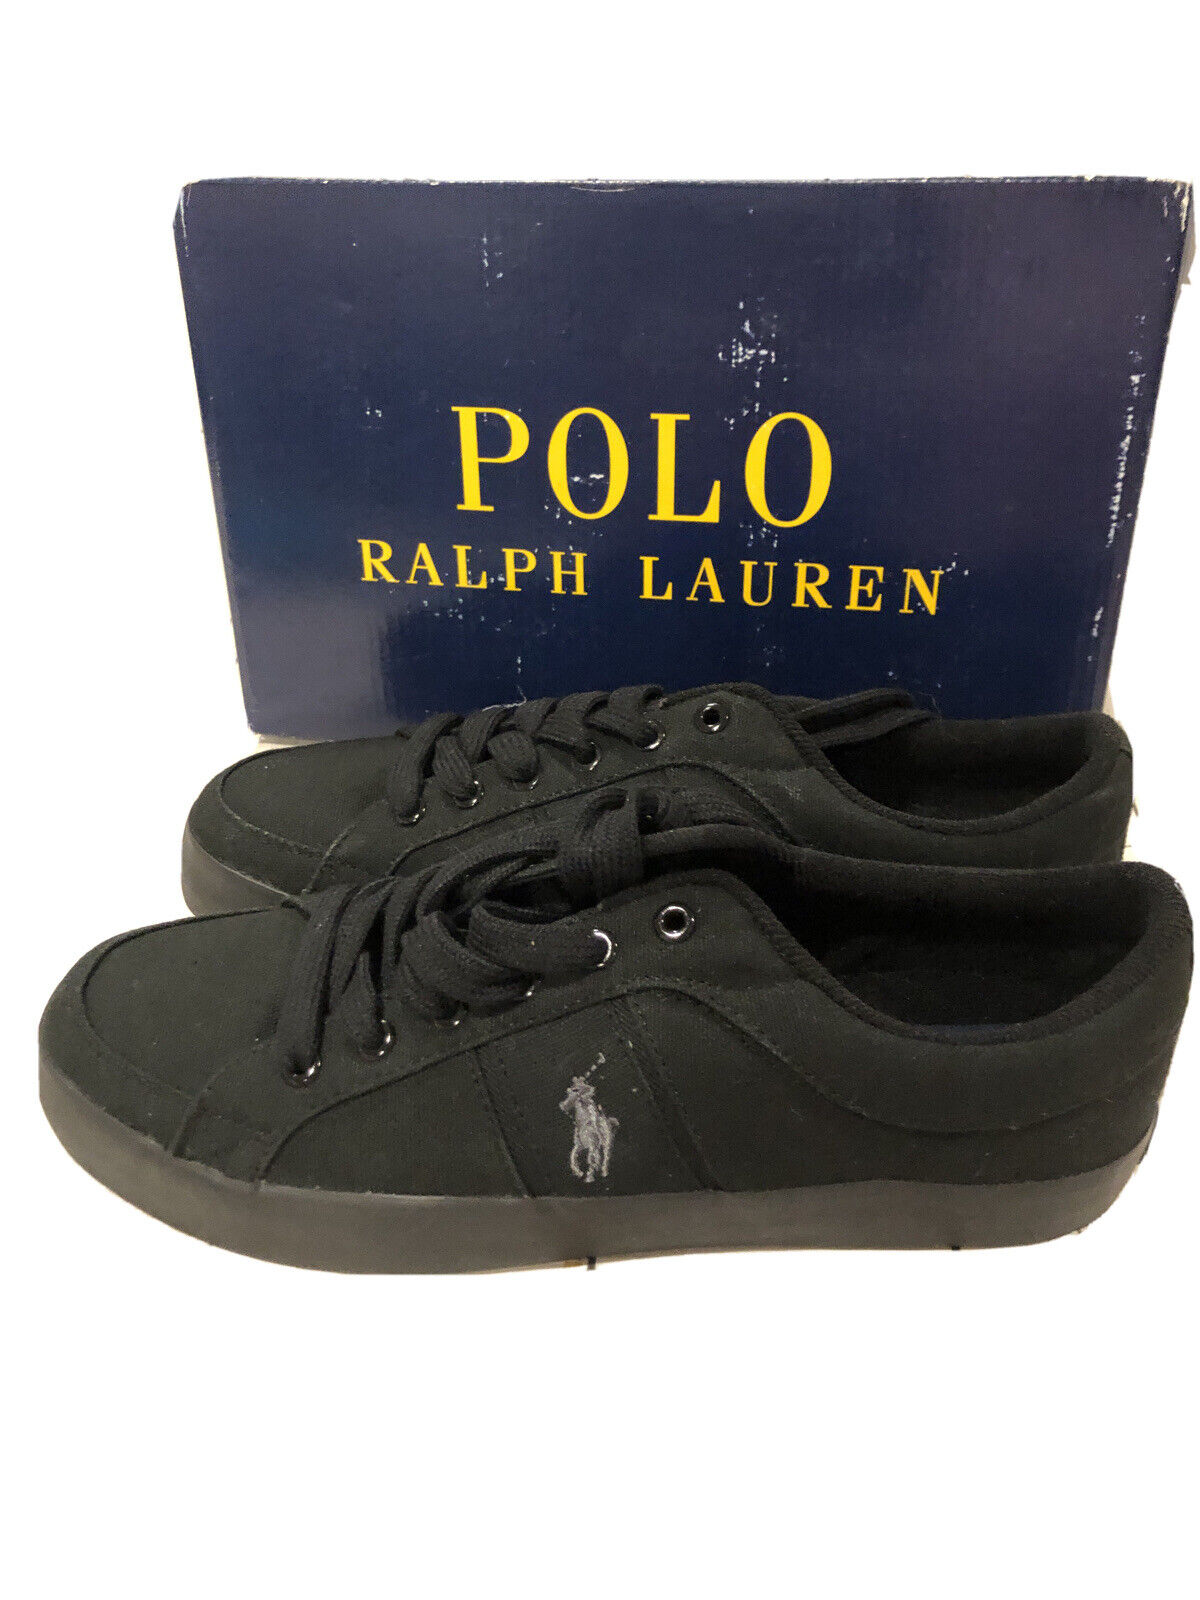 vroegrijp Aanpassing Intrekking Polo Ralph Lauren Mens Sneaker Bolingbrook 9.5- 496 | eBay